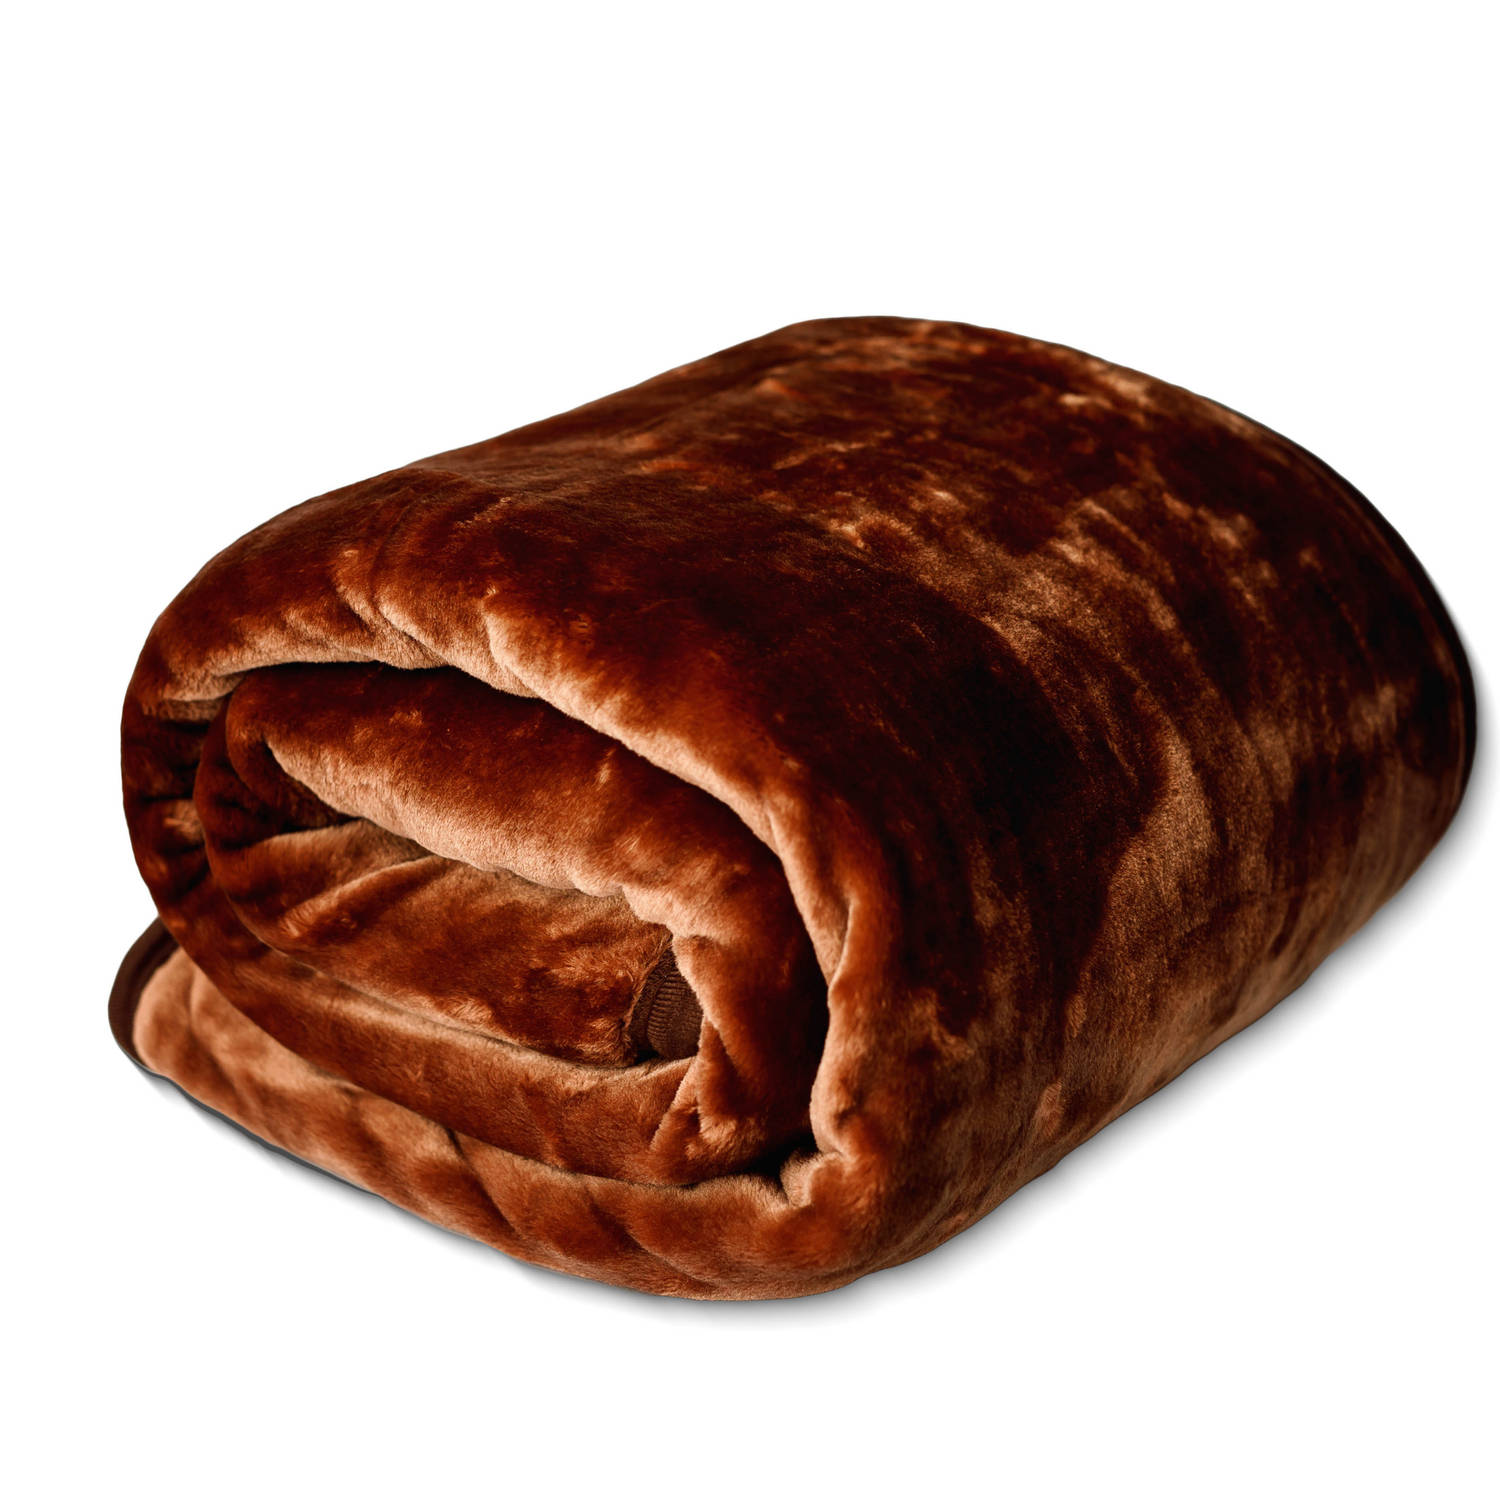 HappyBed Fleexe deken bruin | 150x200 cm - Heerlijk zacht fleece plaid - Warmte deken - Woon deken - Bankhoes Sprei - deken